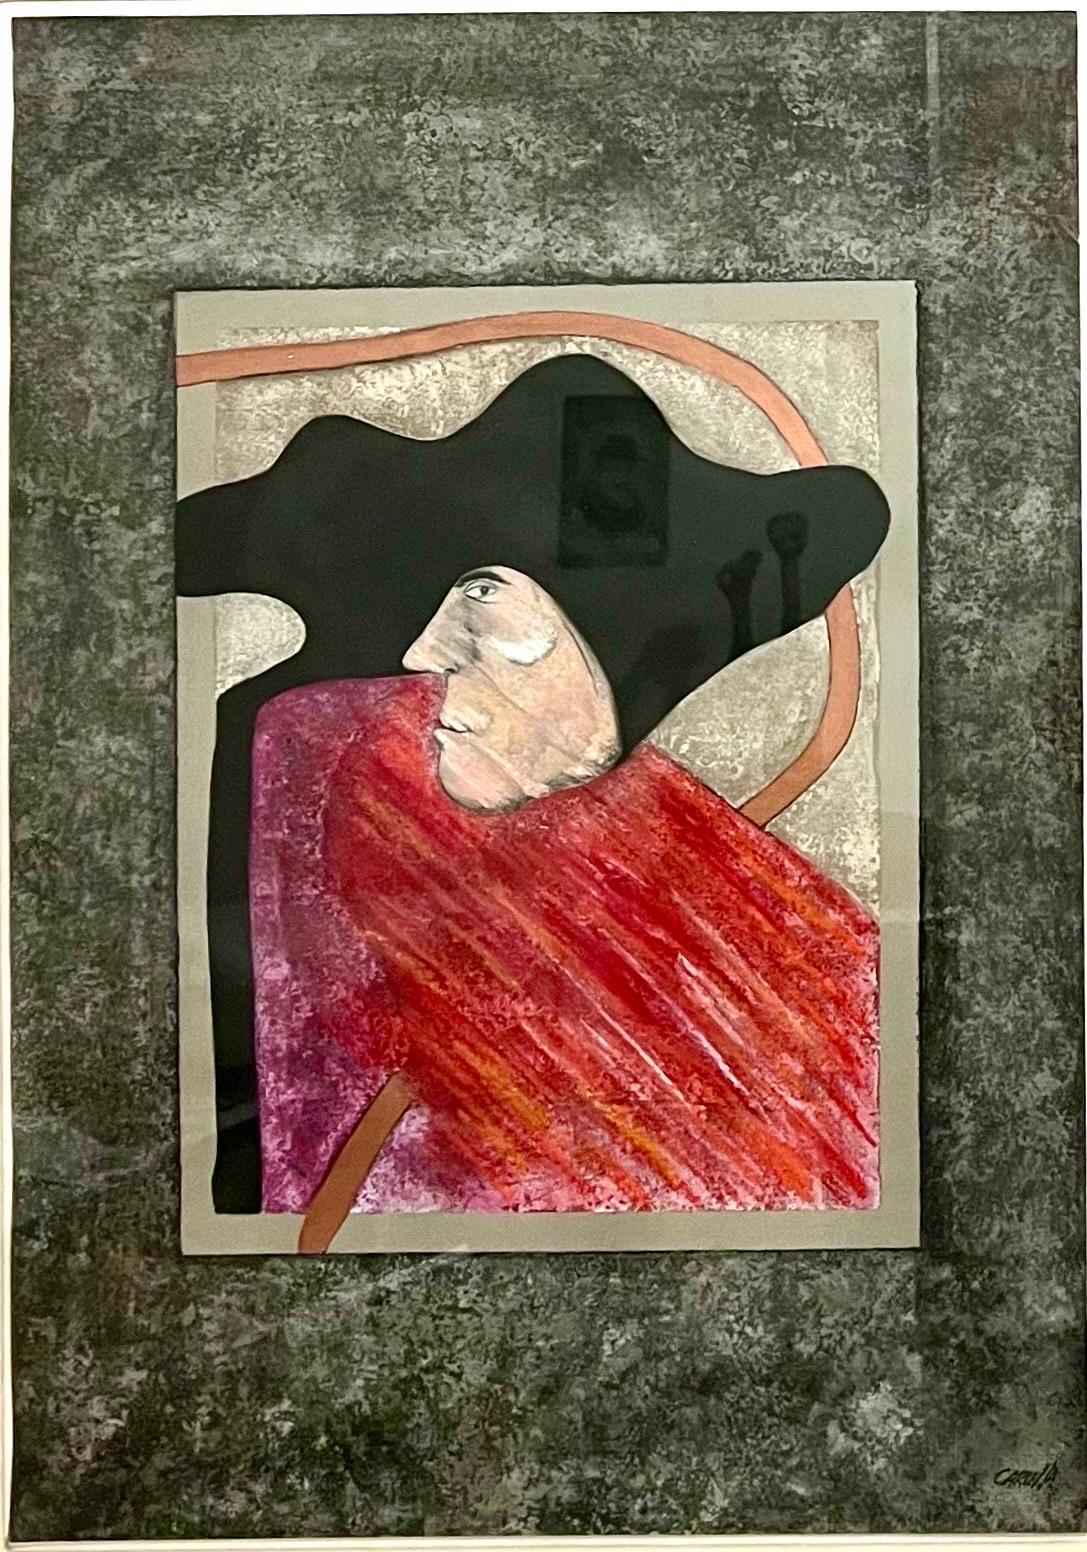 Ramon Antonio Carulla (cubain, né en 1936). 
Signature de l'artiste en bas à droite. Label au verso. Conserve l'étiquette d'origine de JOY MOOS GALLERY. 
Dimensions : 38.5 X 28 pouces.  Le papier mesure 28 x 19,5 pouces.
Cette peinture est une